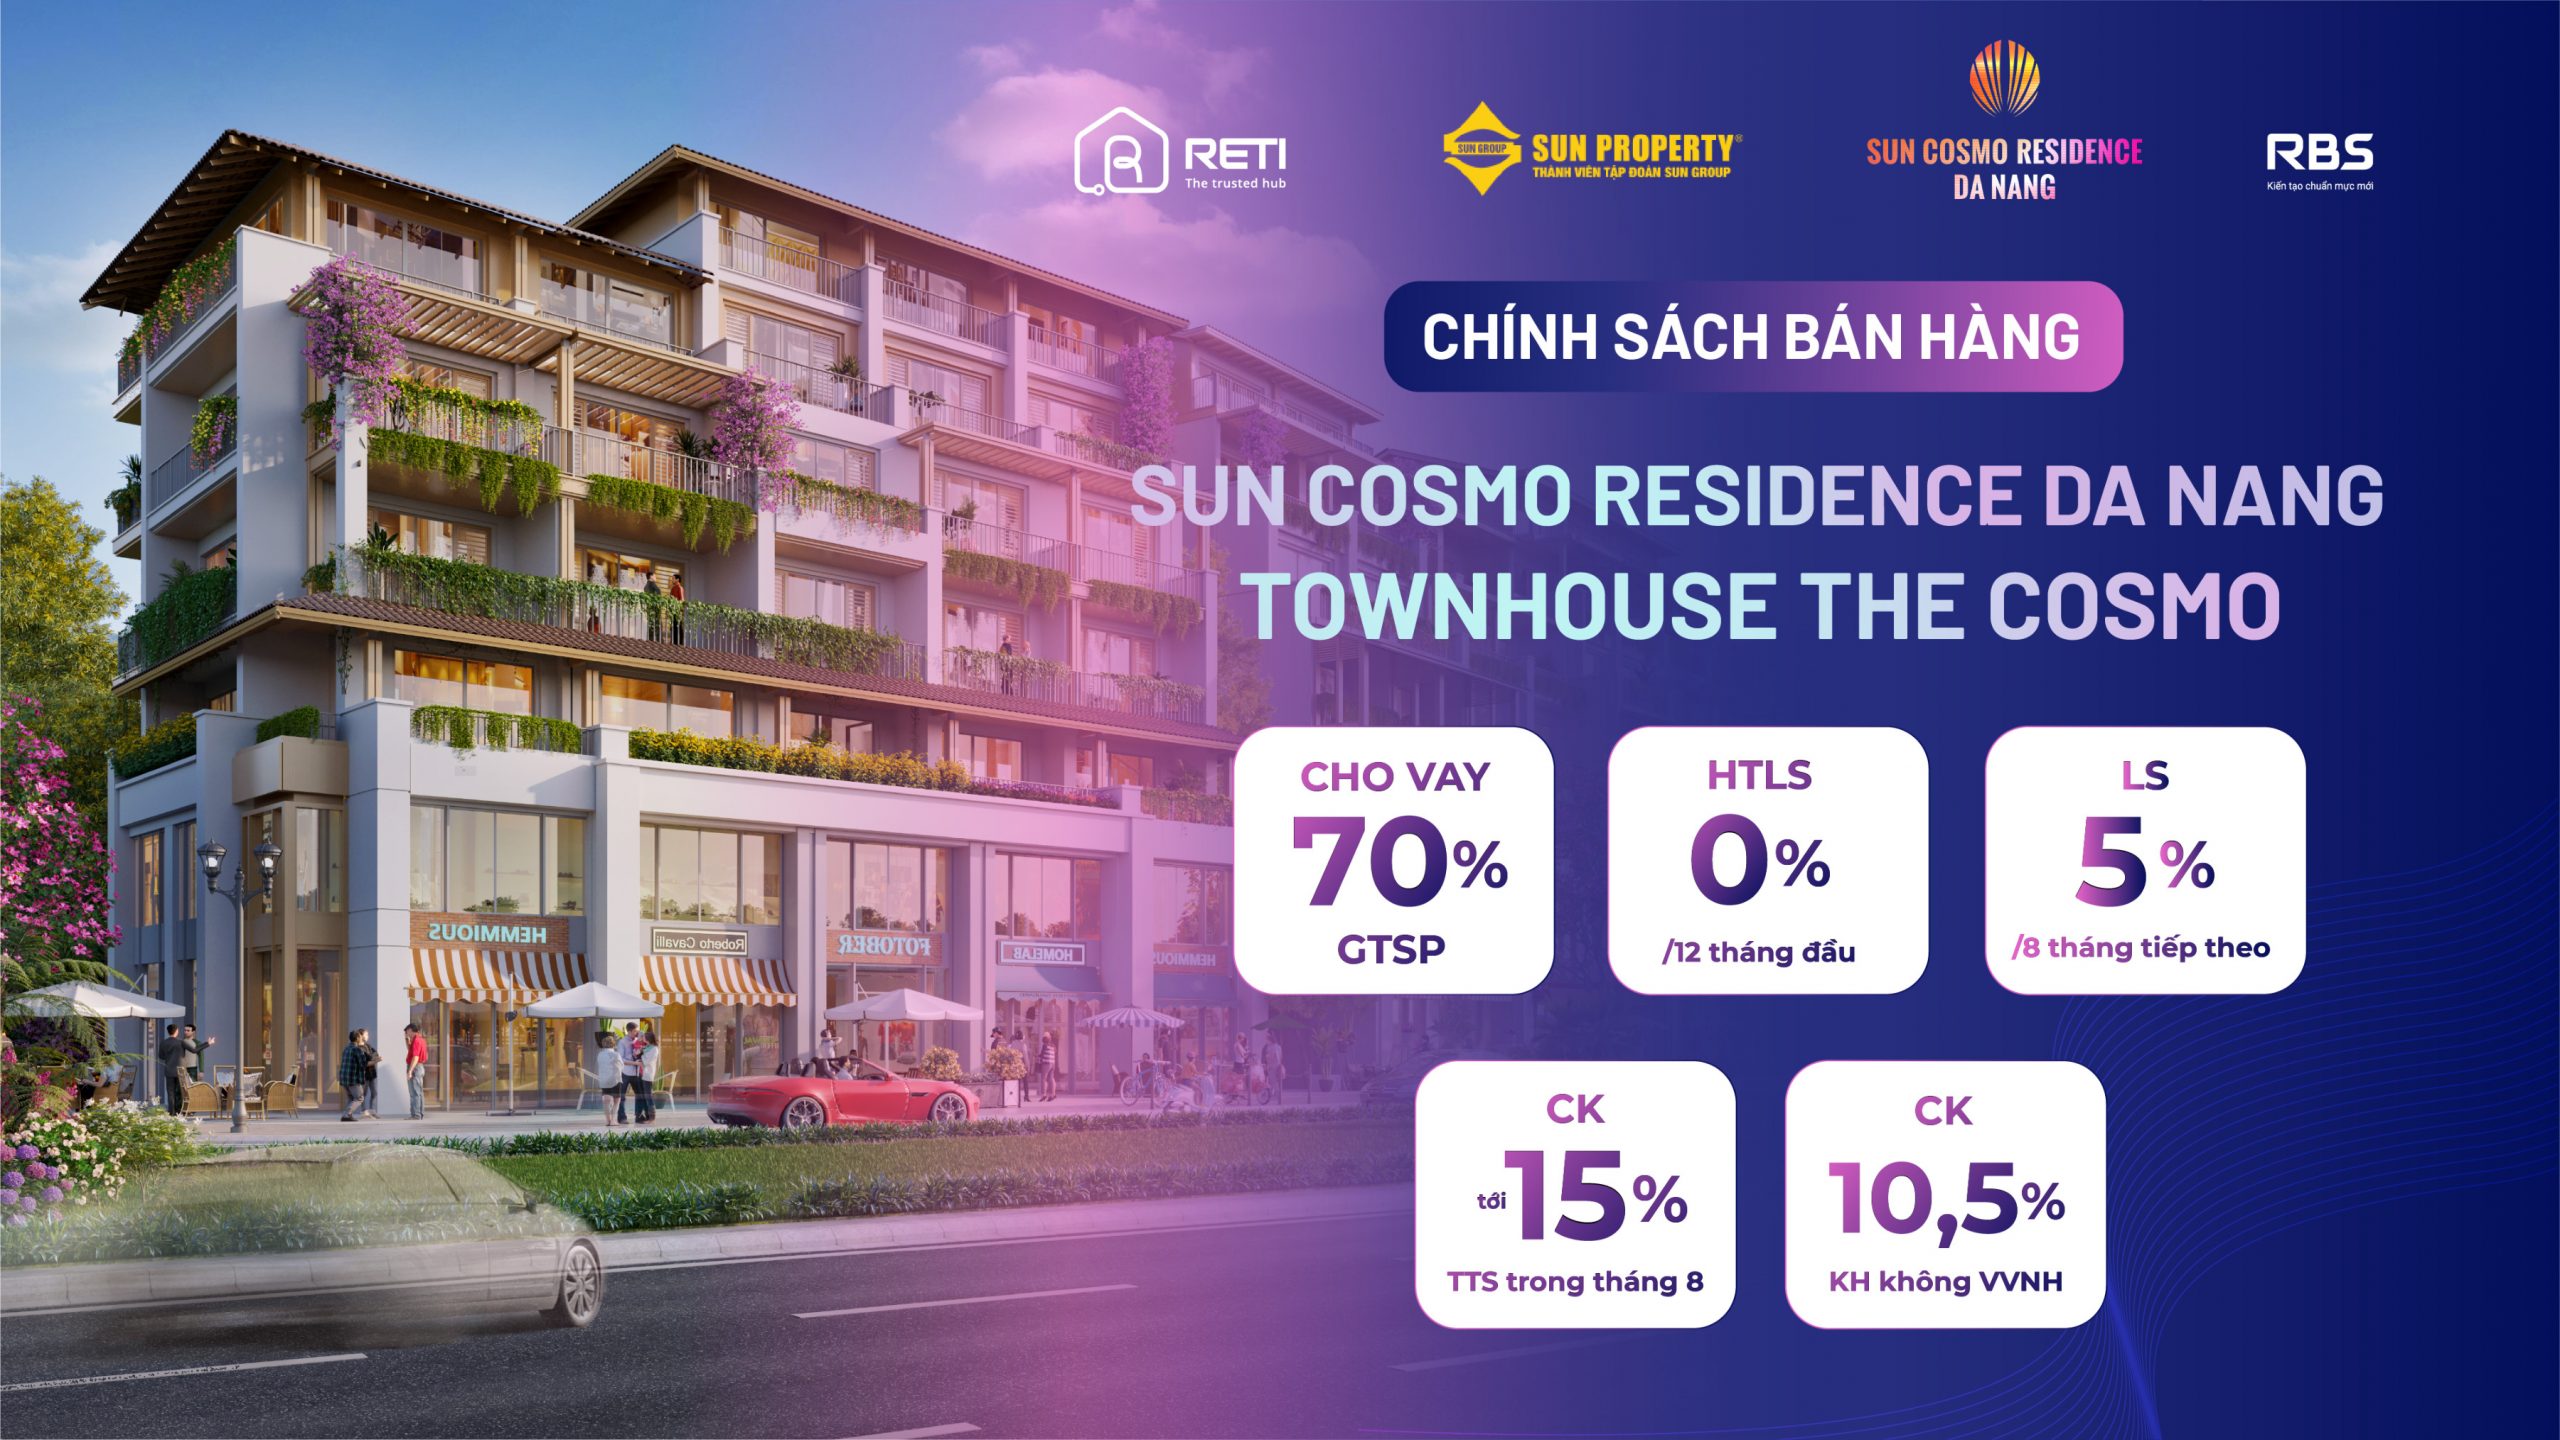 Nhà đầu tư cần lưu ý 5 điều sau đây khi đầu tư căn hộ Sun Cosmo Residence Đà Nẵng 8